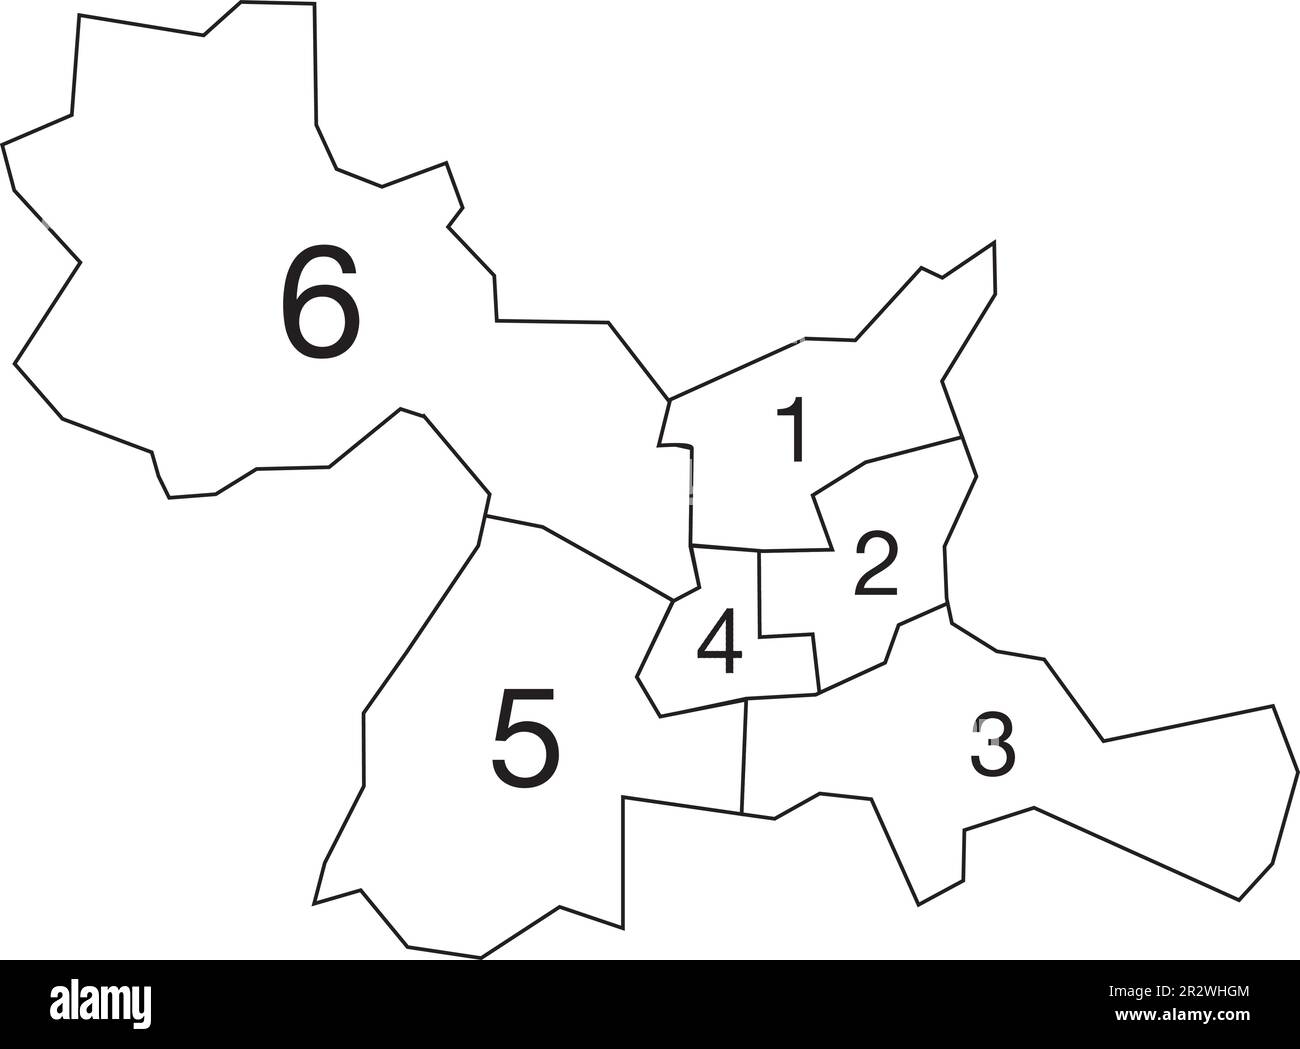 Carte administrative à vecteur plat blanc de RENNES, FRANCE avec des étiquettes nominées et des lignes de bordure noires de ses cantons Illustration de Vecteur